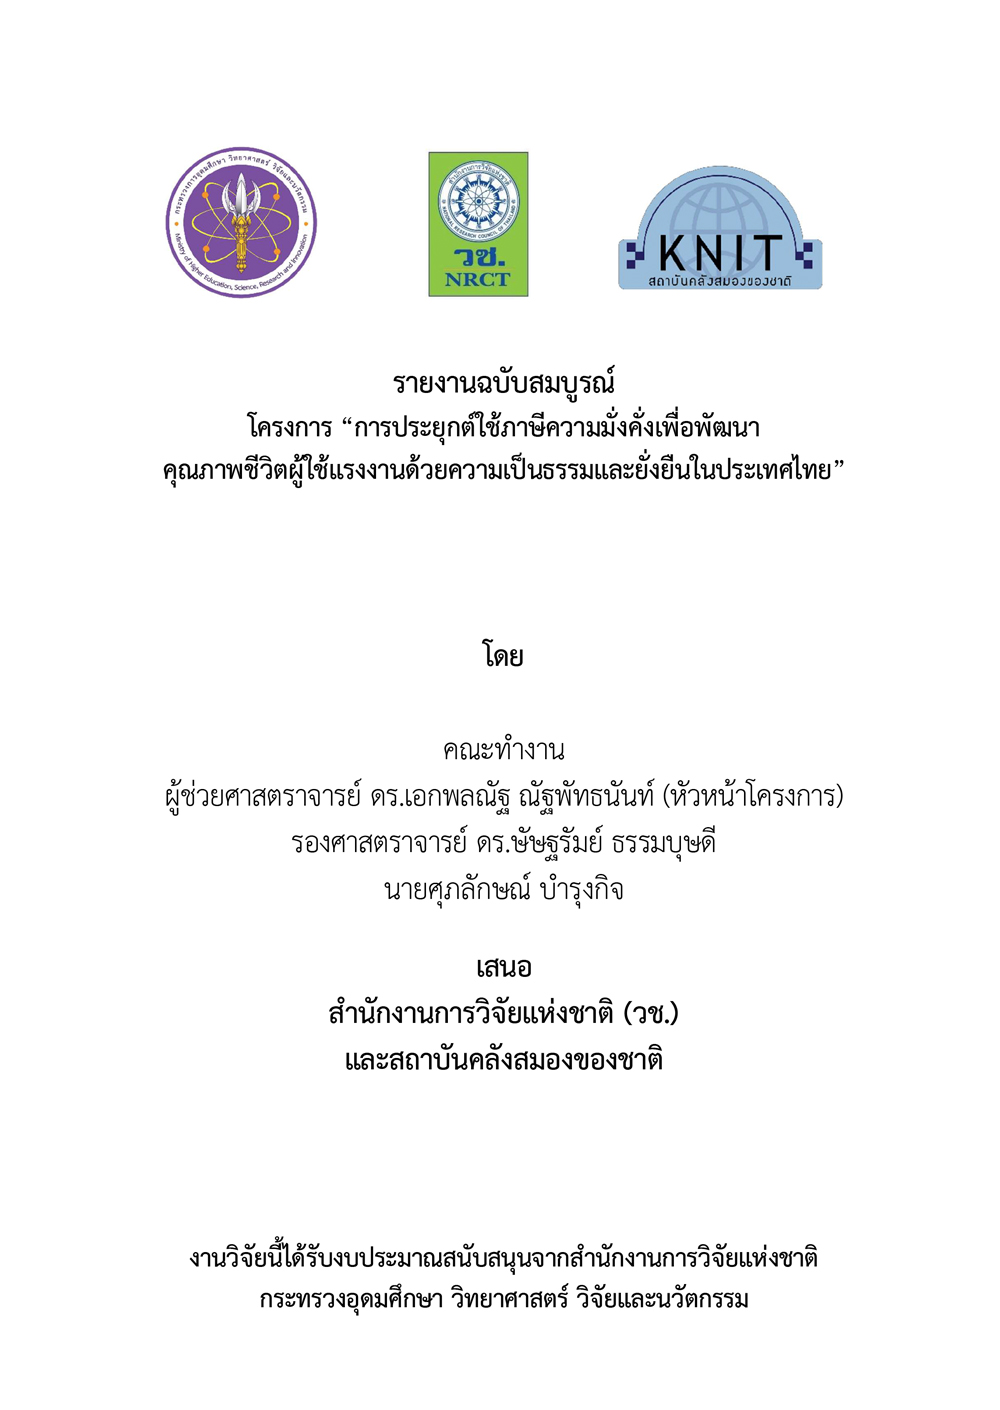 รายงานฉบับสมบูรณ์ โครงการ “การประยุกต์ใช้ภาษีความมั่งคั่งเพื่อพัฒนาคุณภาพชีวิตผู้ใช้แรงงานด้วยความเป็นธรรมและยั่งยืนในประเทศไทย”